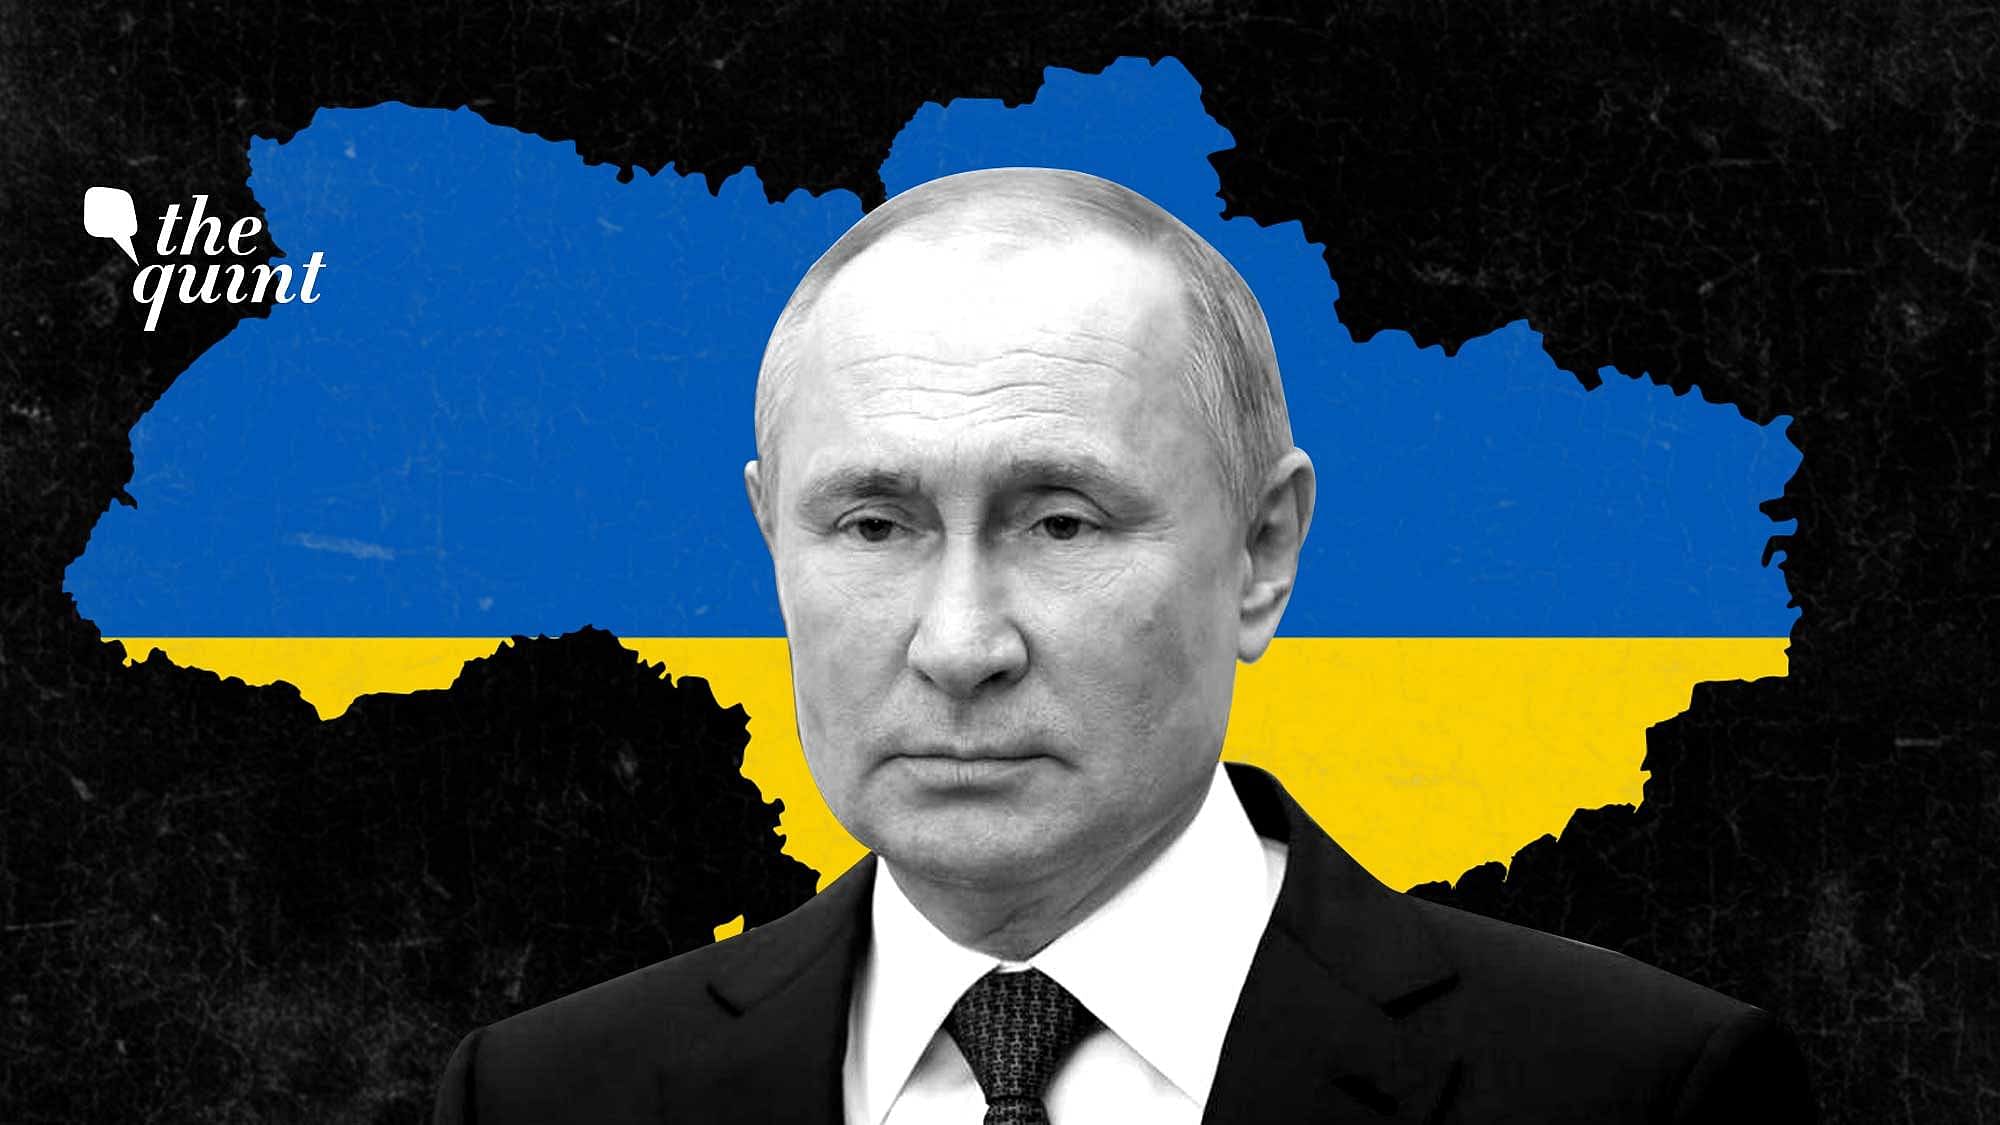 <div class="paragraphs"><p>राष्ट्रपति पुतिन आखिर युद्ध के जरिए यूक्रेन से चाहते क्या हैं?</p></div>